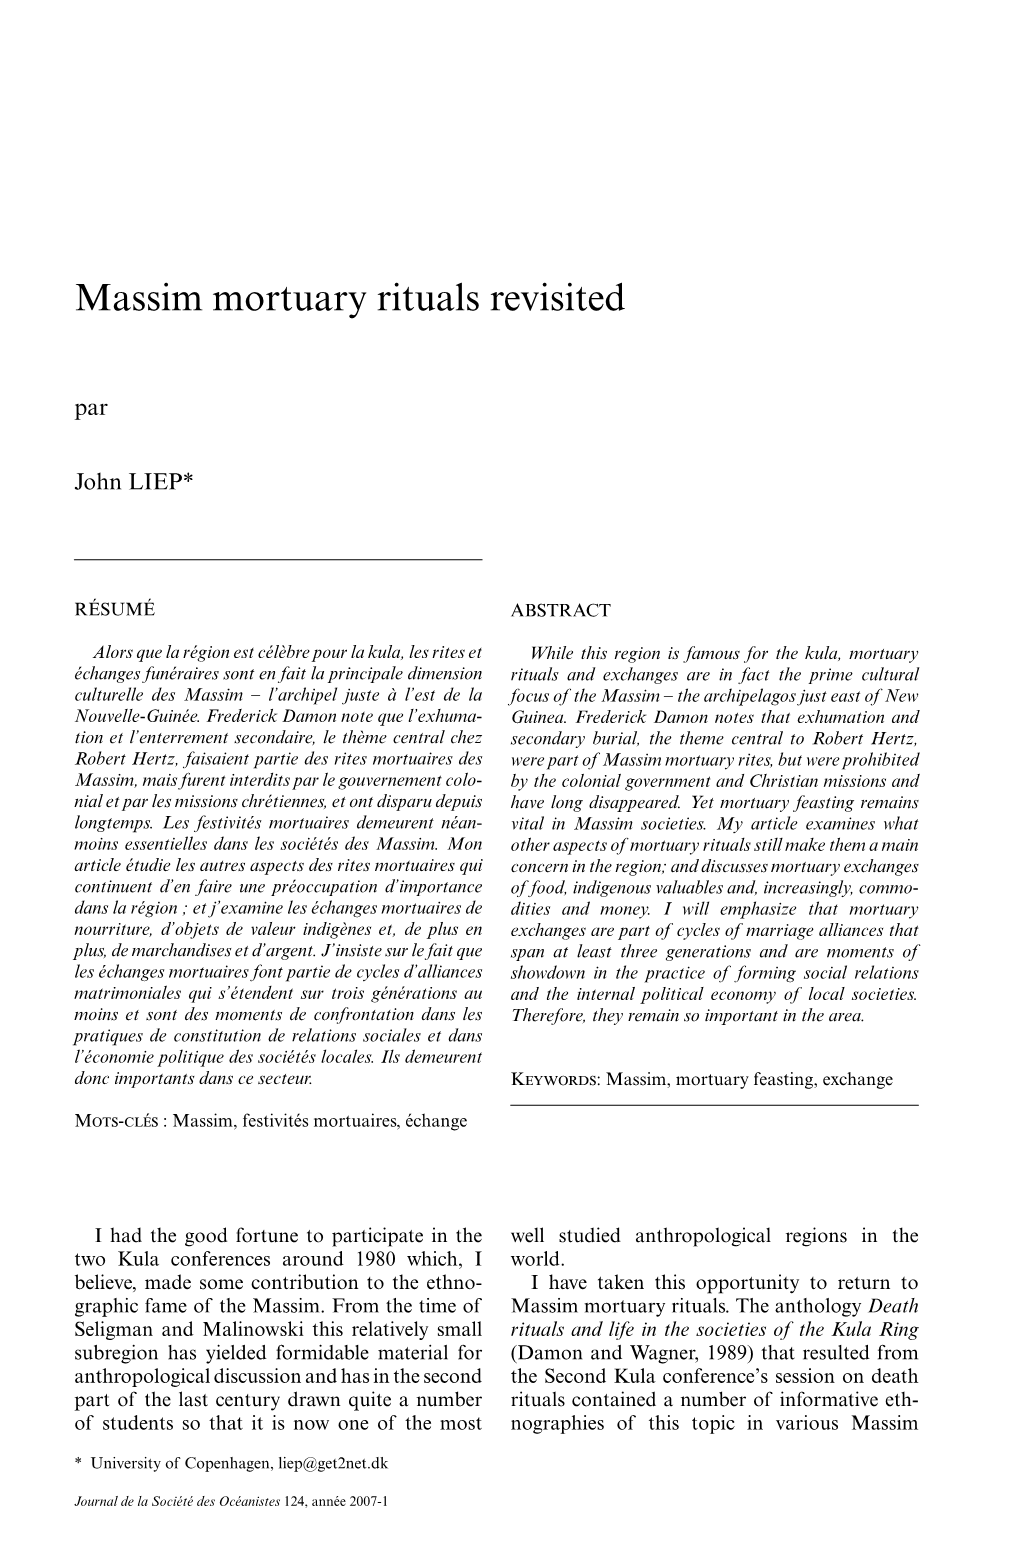 Massim Mortuary Rituals Revisited